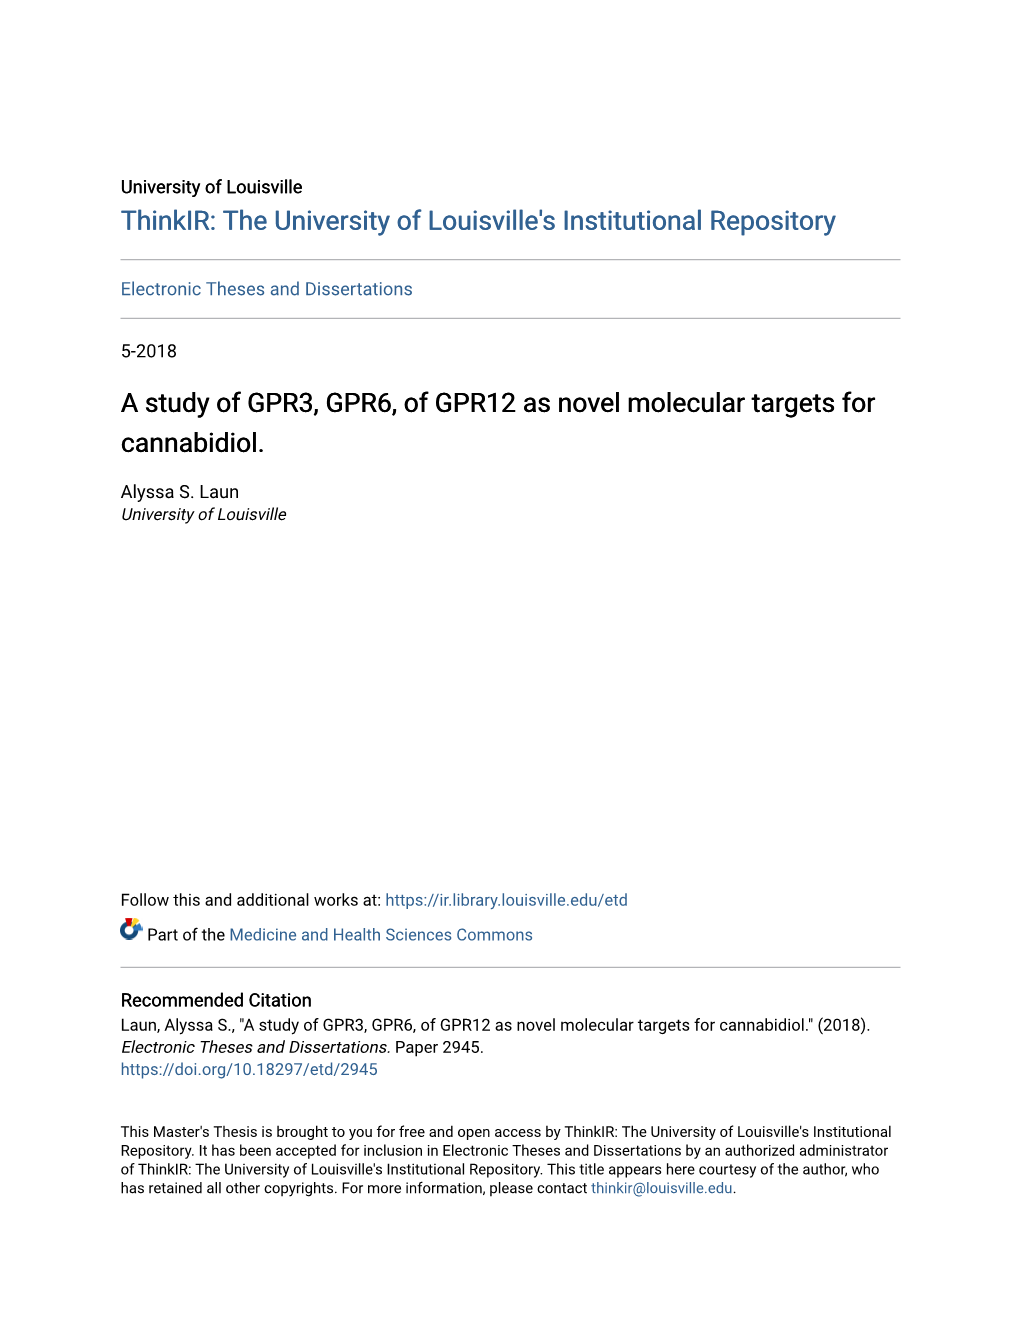 A Study of GPR3, GPR6, of GPR12 As Novel Molecular Targets for Cannabidiol